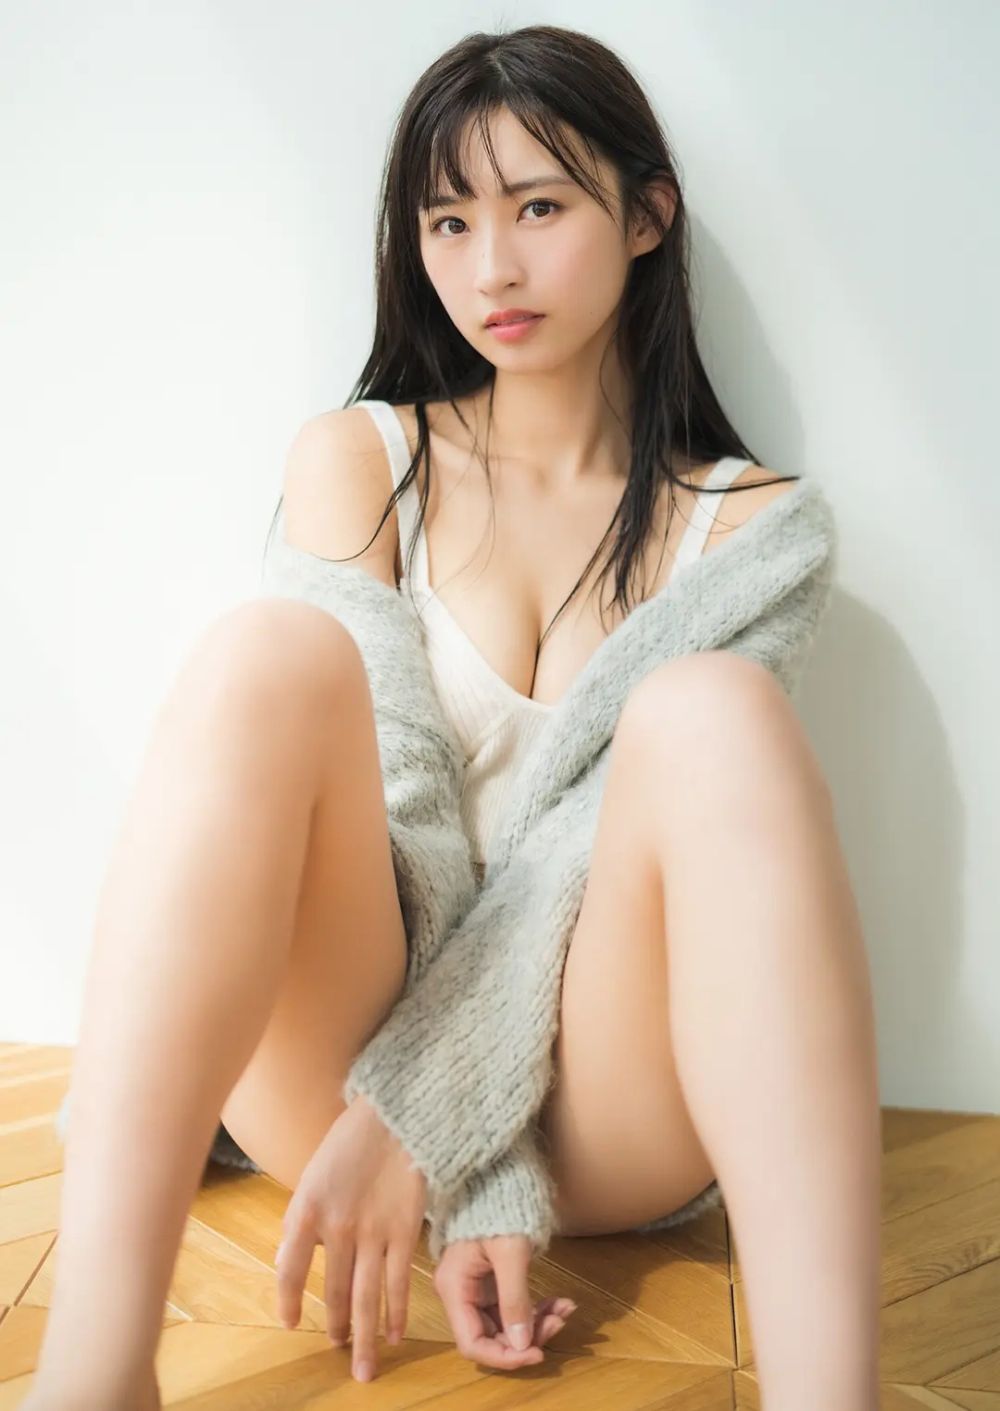 松本日向 Sexy and Hottest Photos , Latest Pics